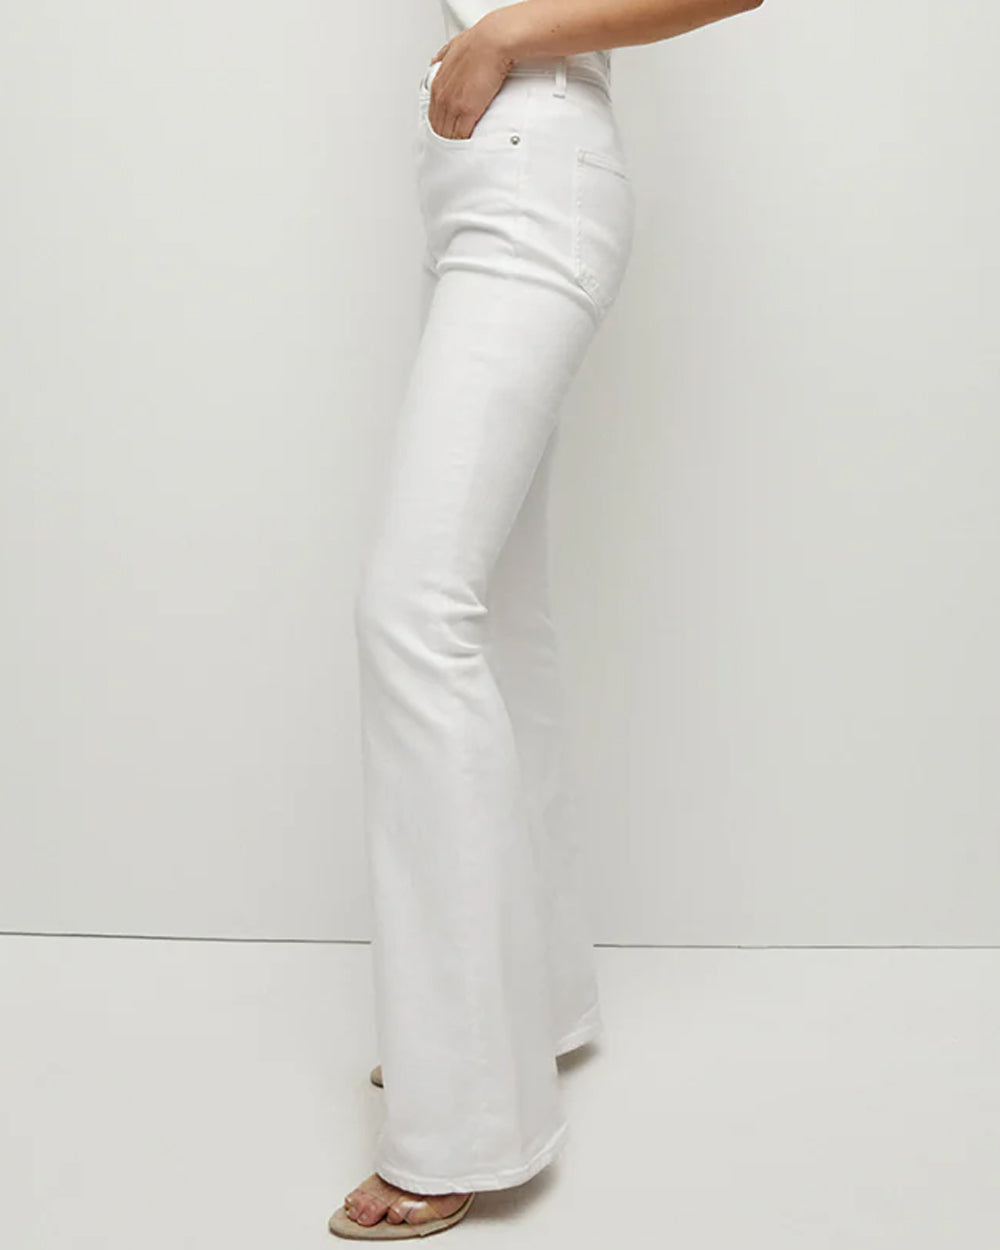 Beverly Skinny Flare Jean in White